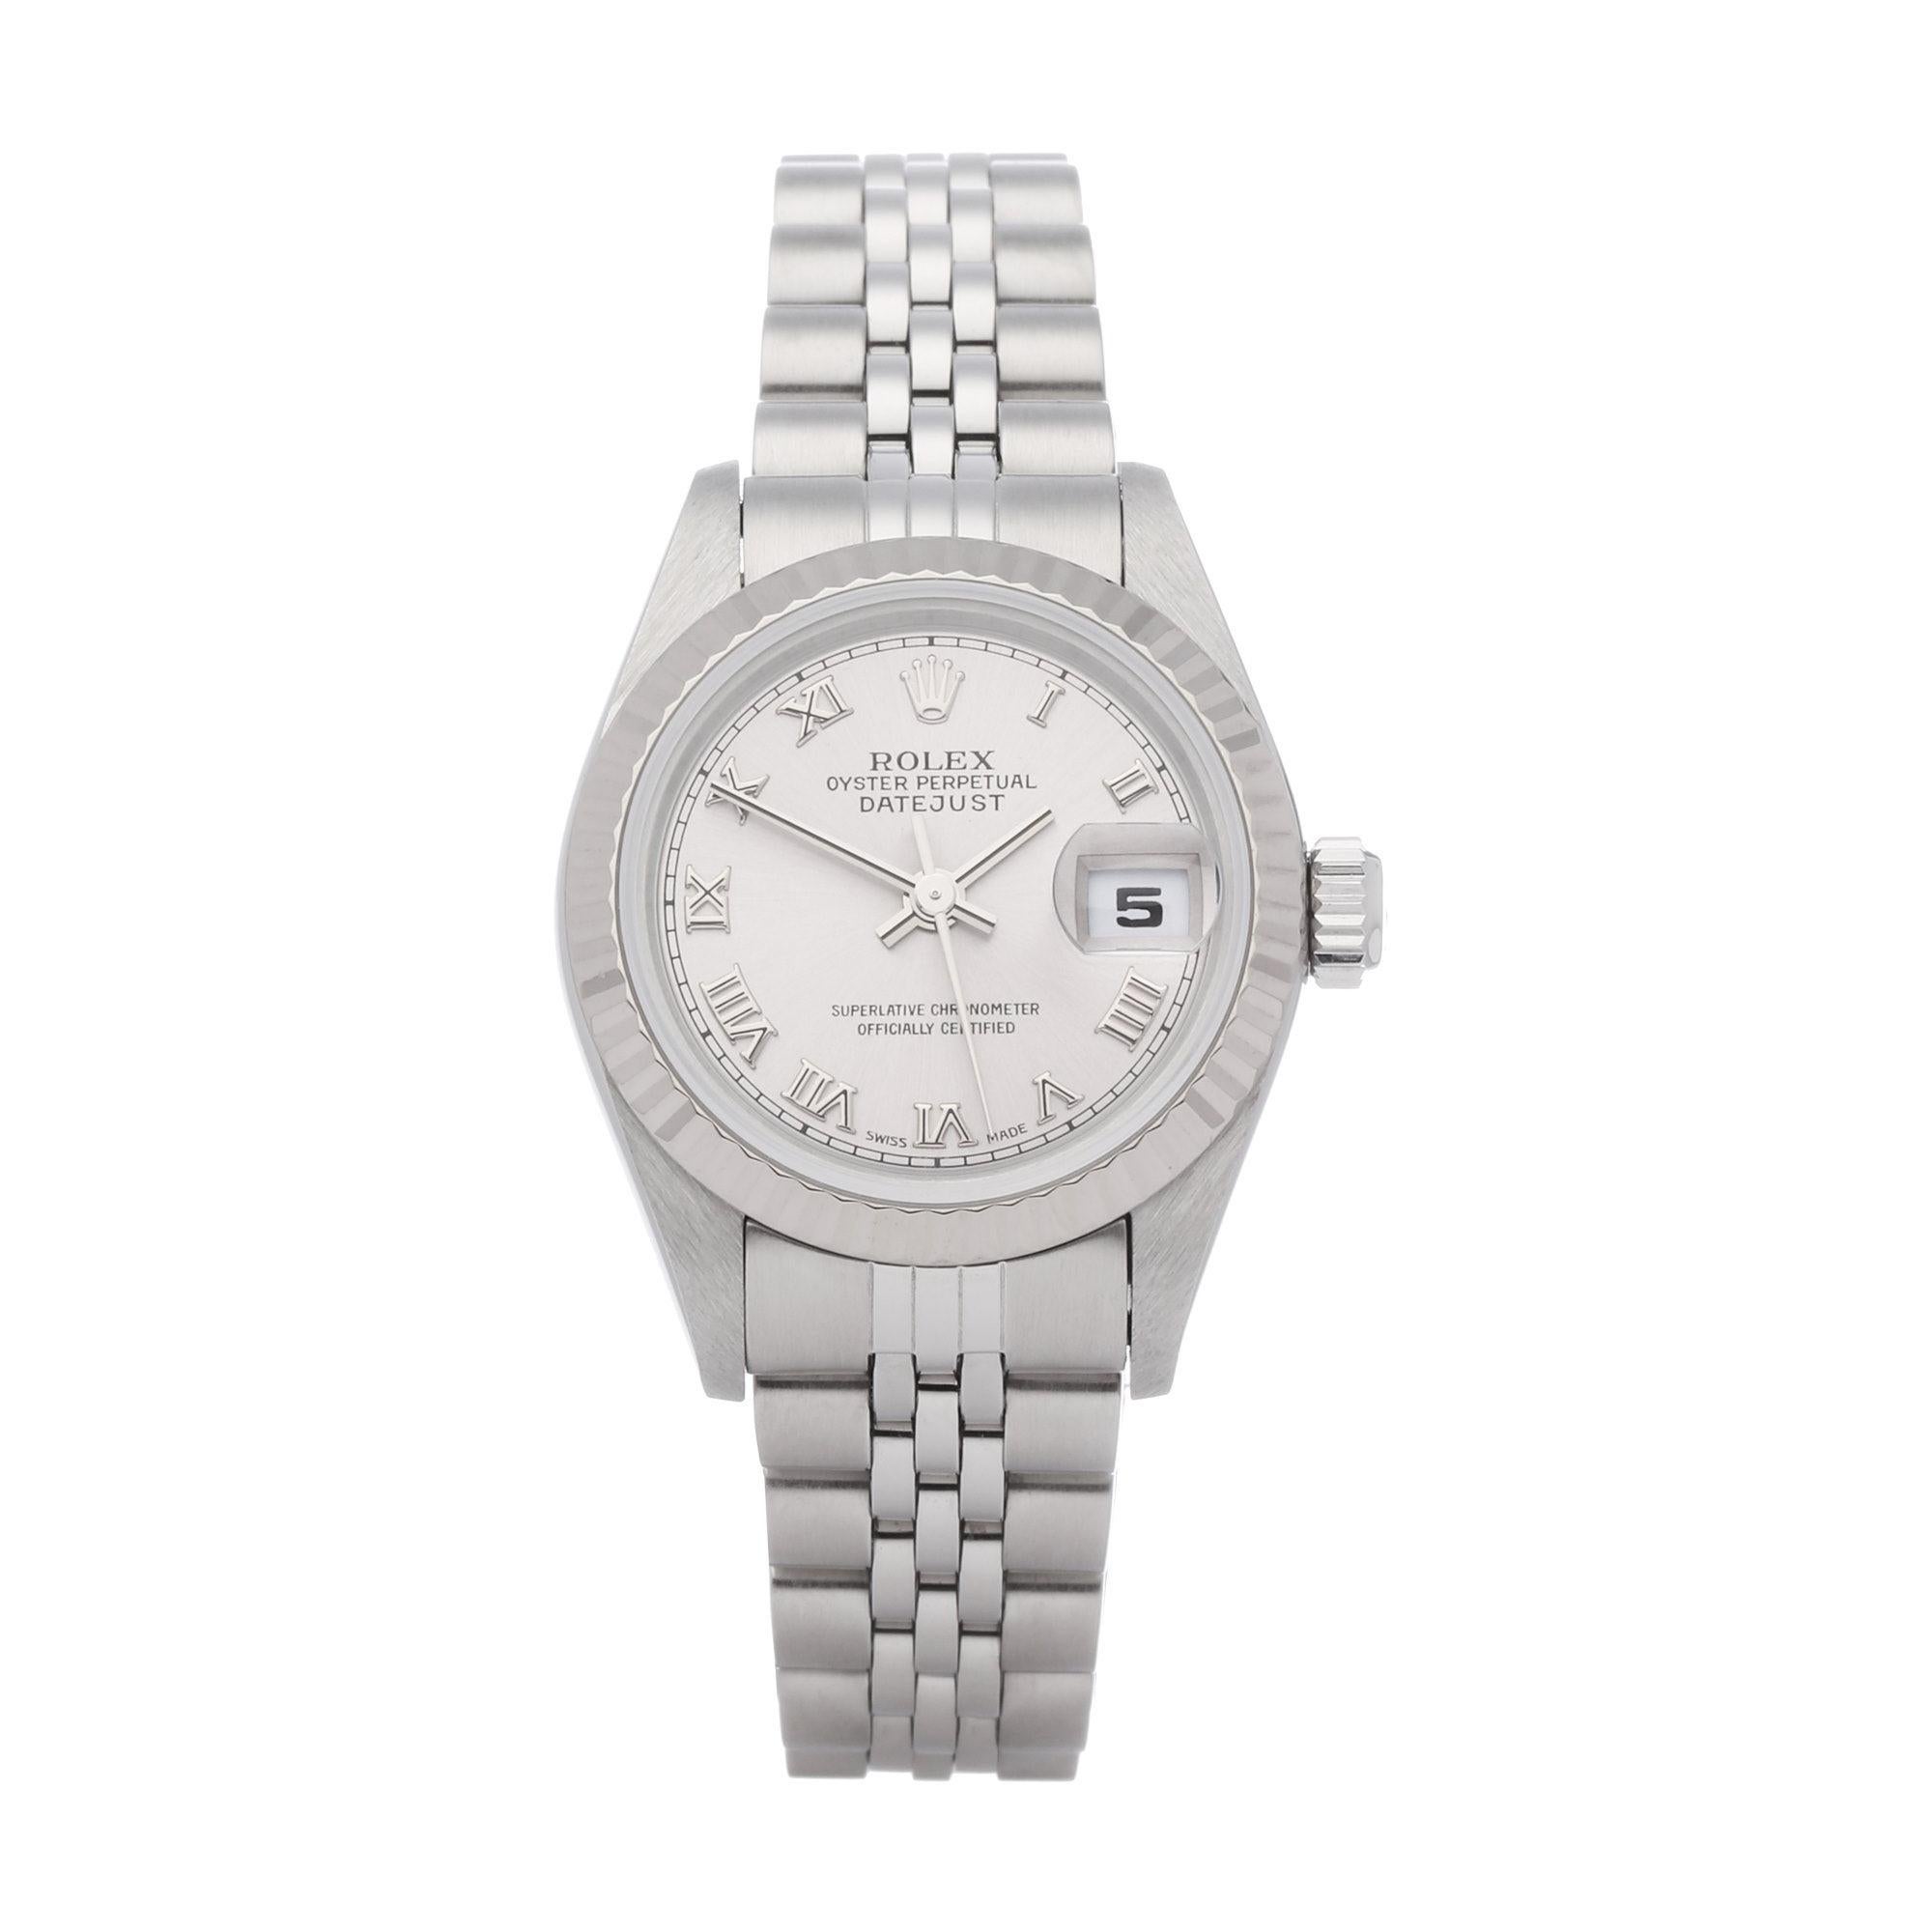 Rolex Datejust 26 79174 Ladies White Gold & Stainless Steel Watch